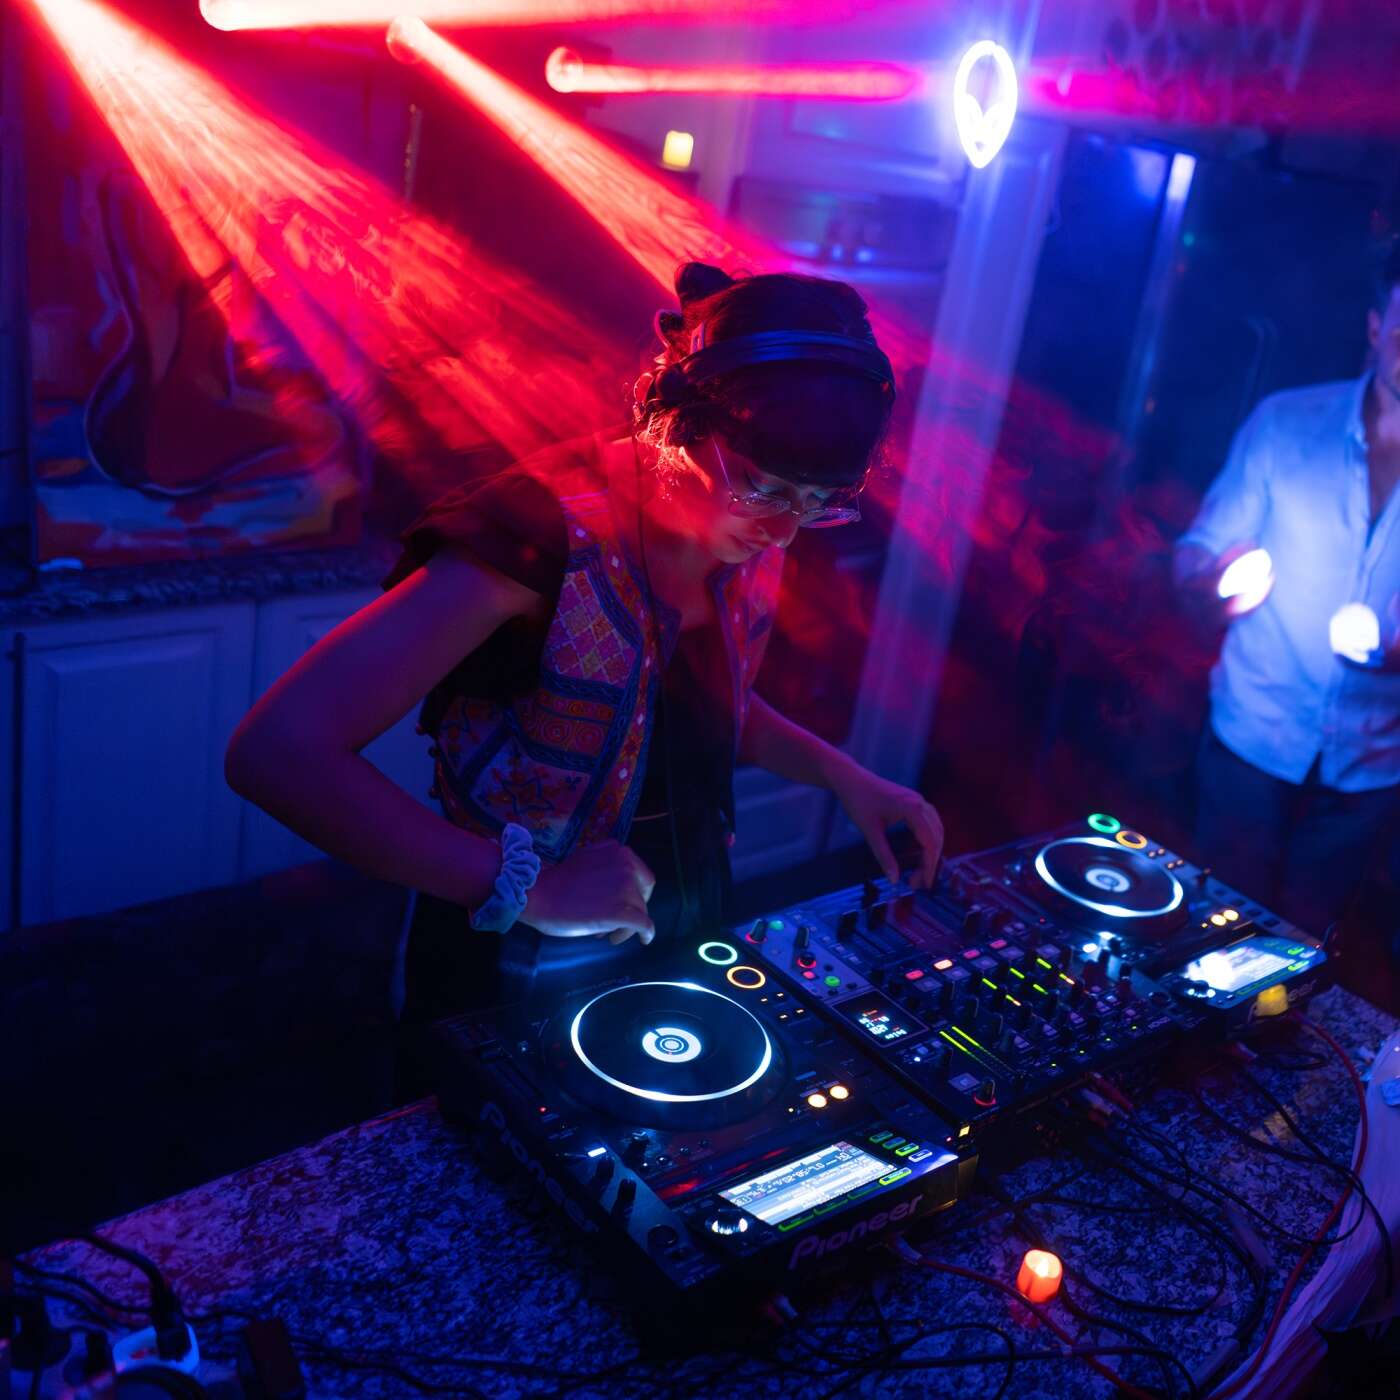 Eine DJane legt in einem Club auf, beleuchtet von bunten Laserlichtern und umgeben von tanzenden Menschen.